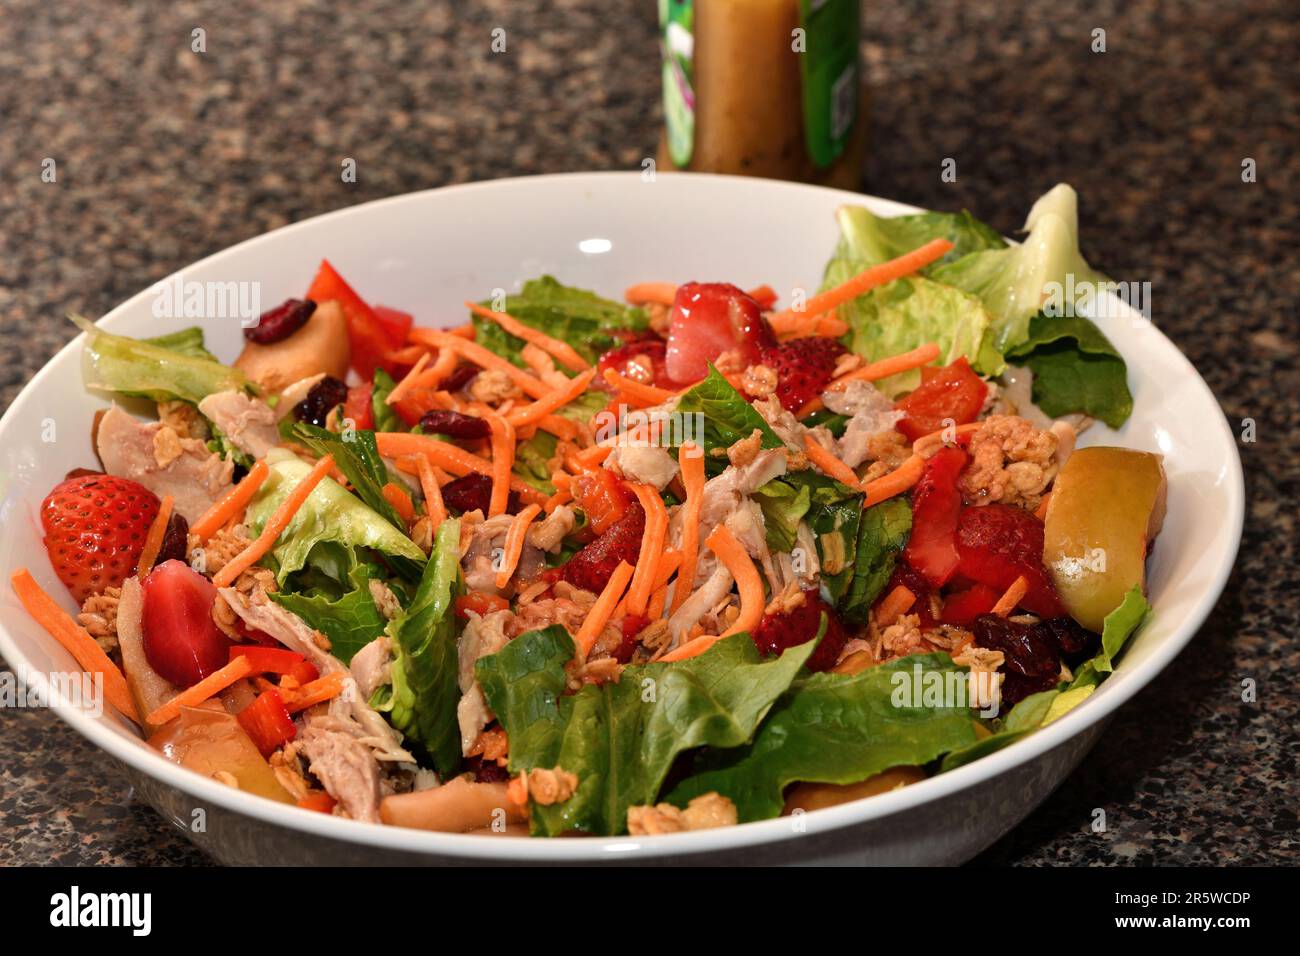 Ein frisch zubereiteter Salat mit Gemüse und Obst. Stockfoto